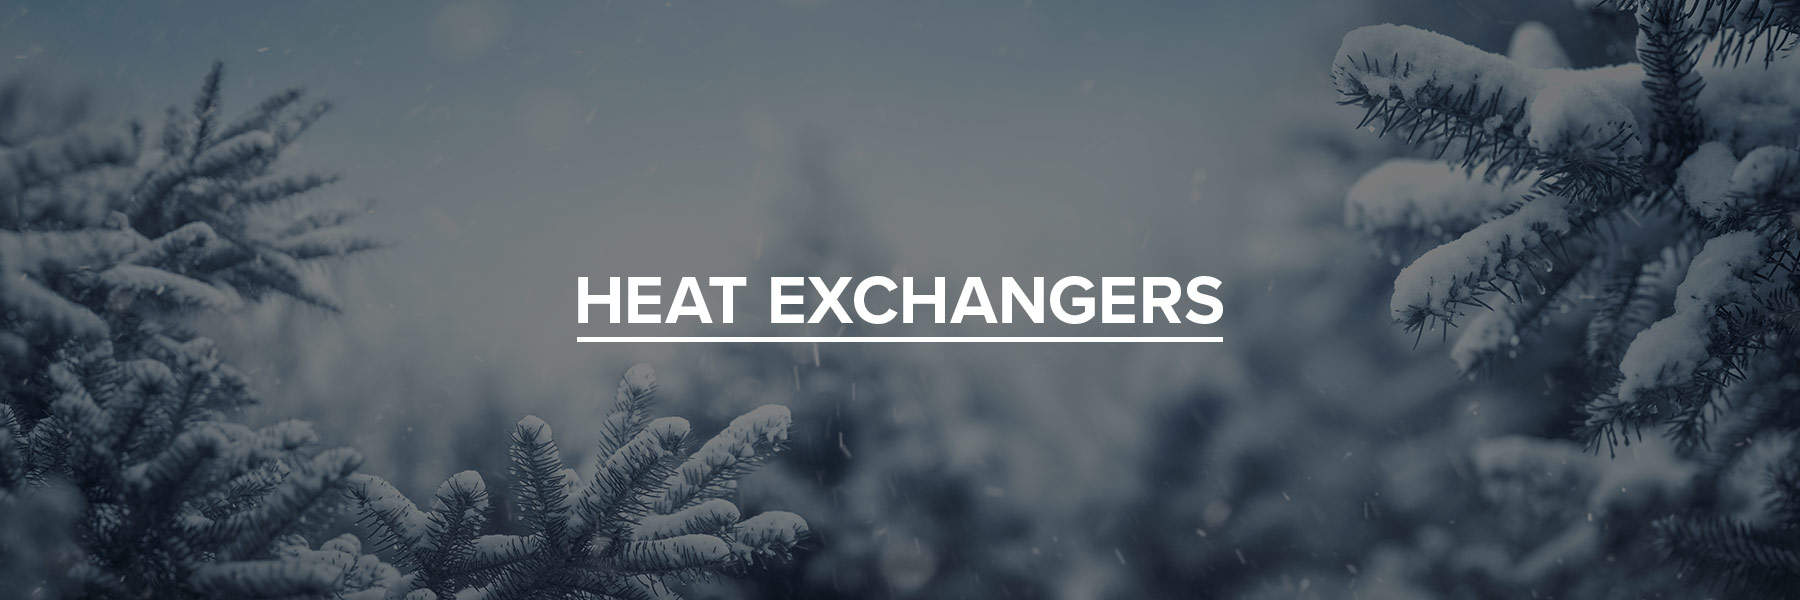 Heat Exchangers Header